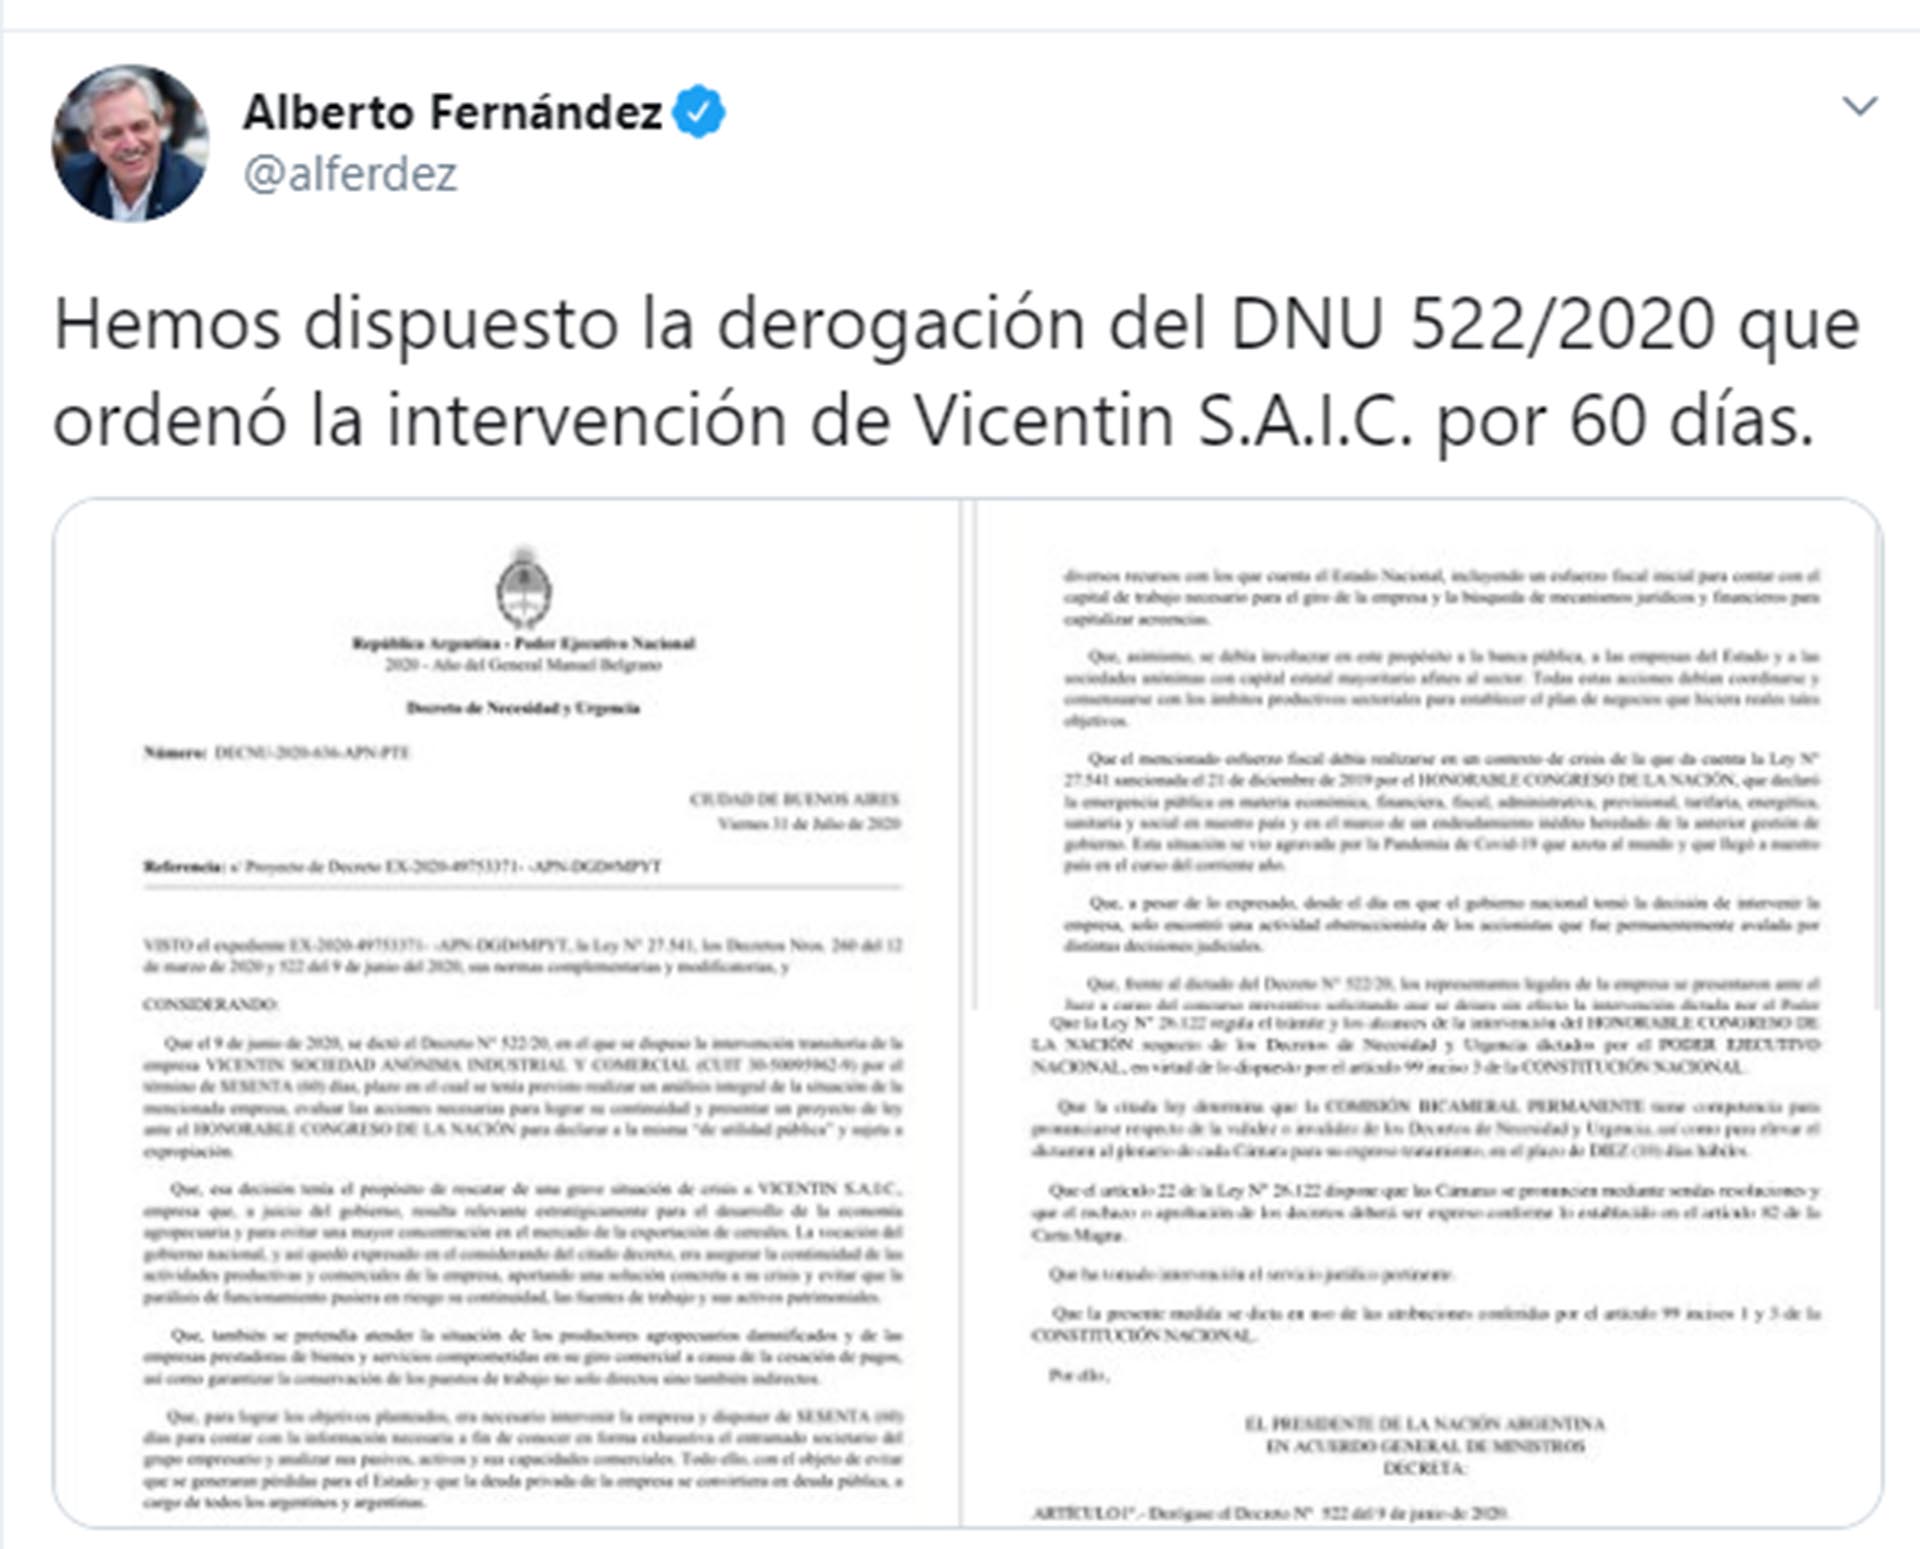 Alberto Fernandez Derogación del DNU 522/2020 que ordenó la intervención de Vicentin S.A.I.C